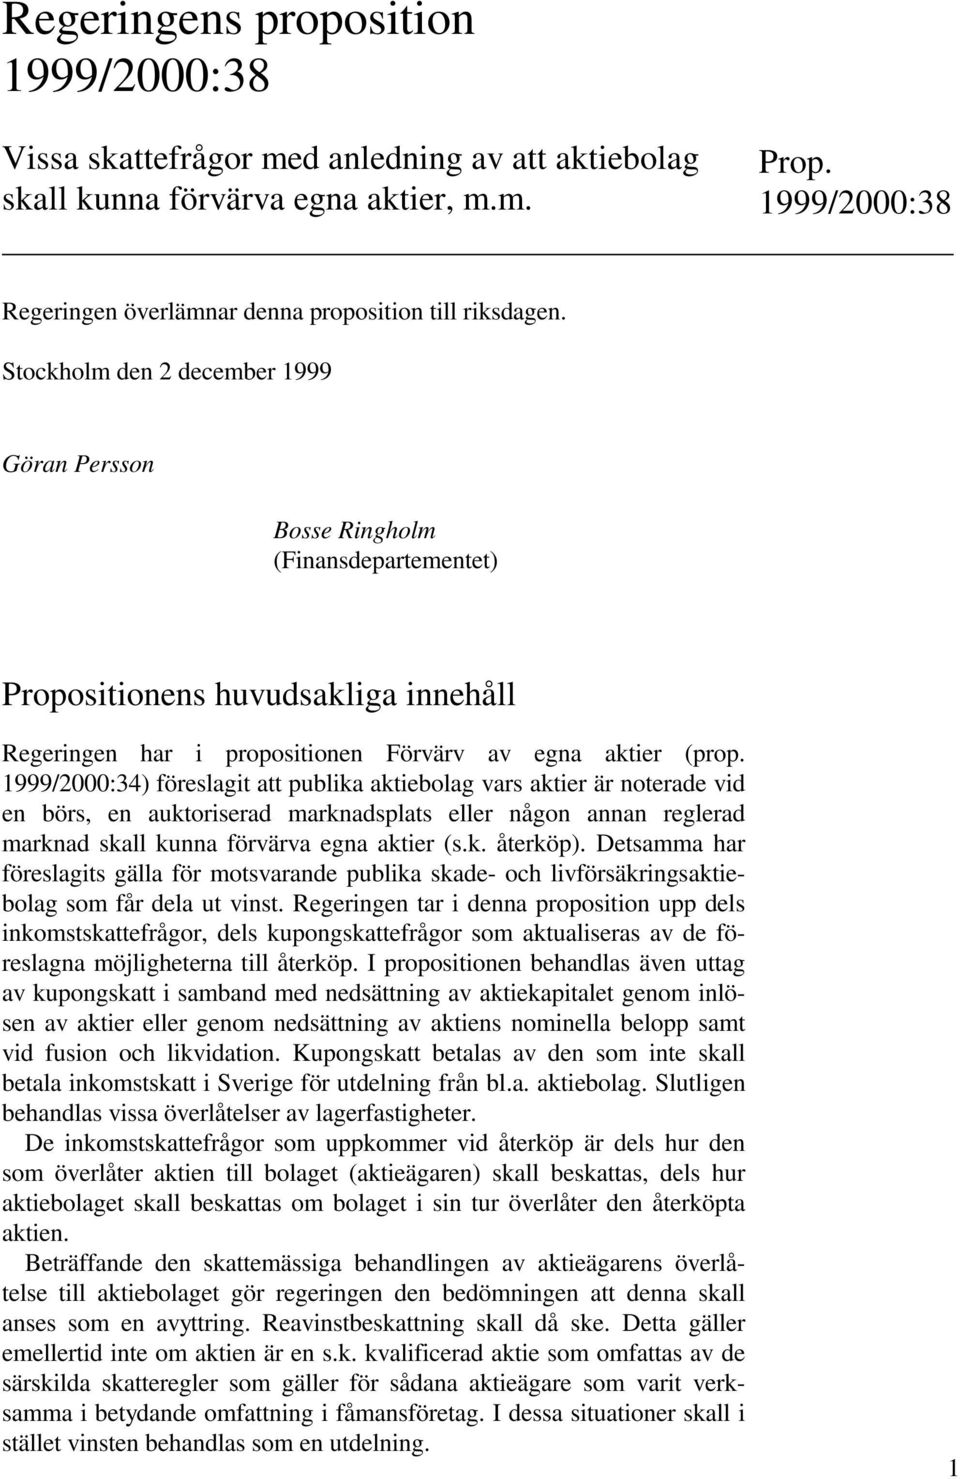 Stockholm den 2 december 1999 Göran Persson Bosse Ringholm (Finansdepartementet) Propositionens huvudsakliga innehåll Regeringen har i propositionen Förvärv av egna aktier (prop.